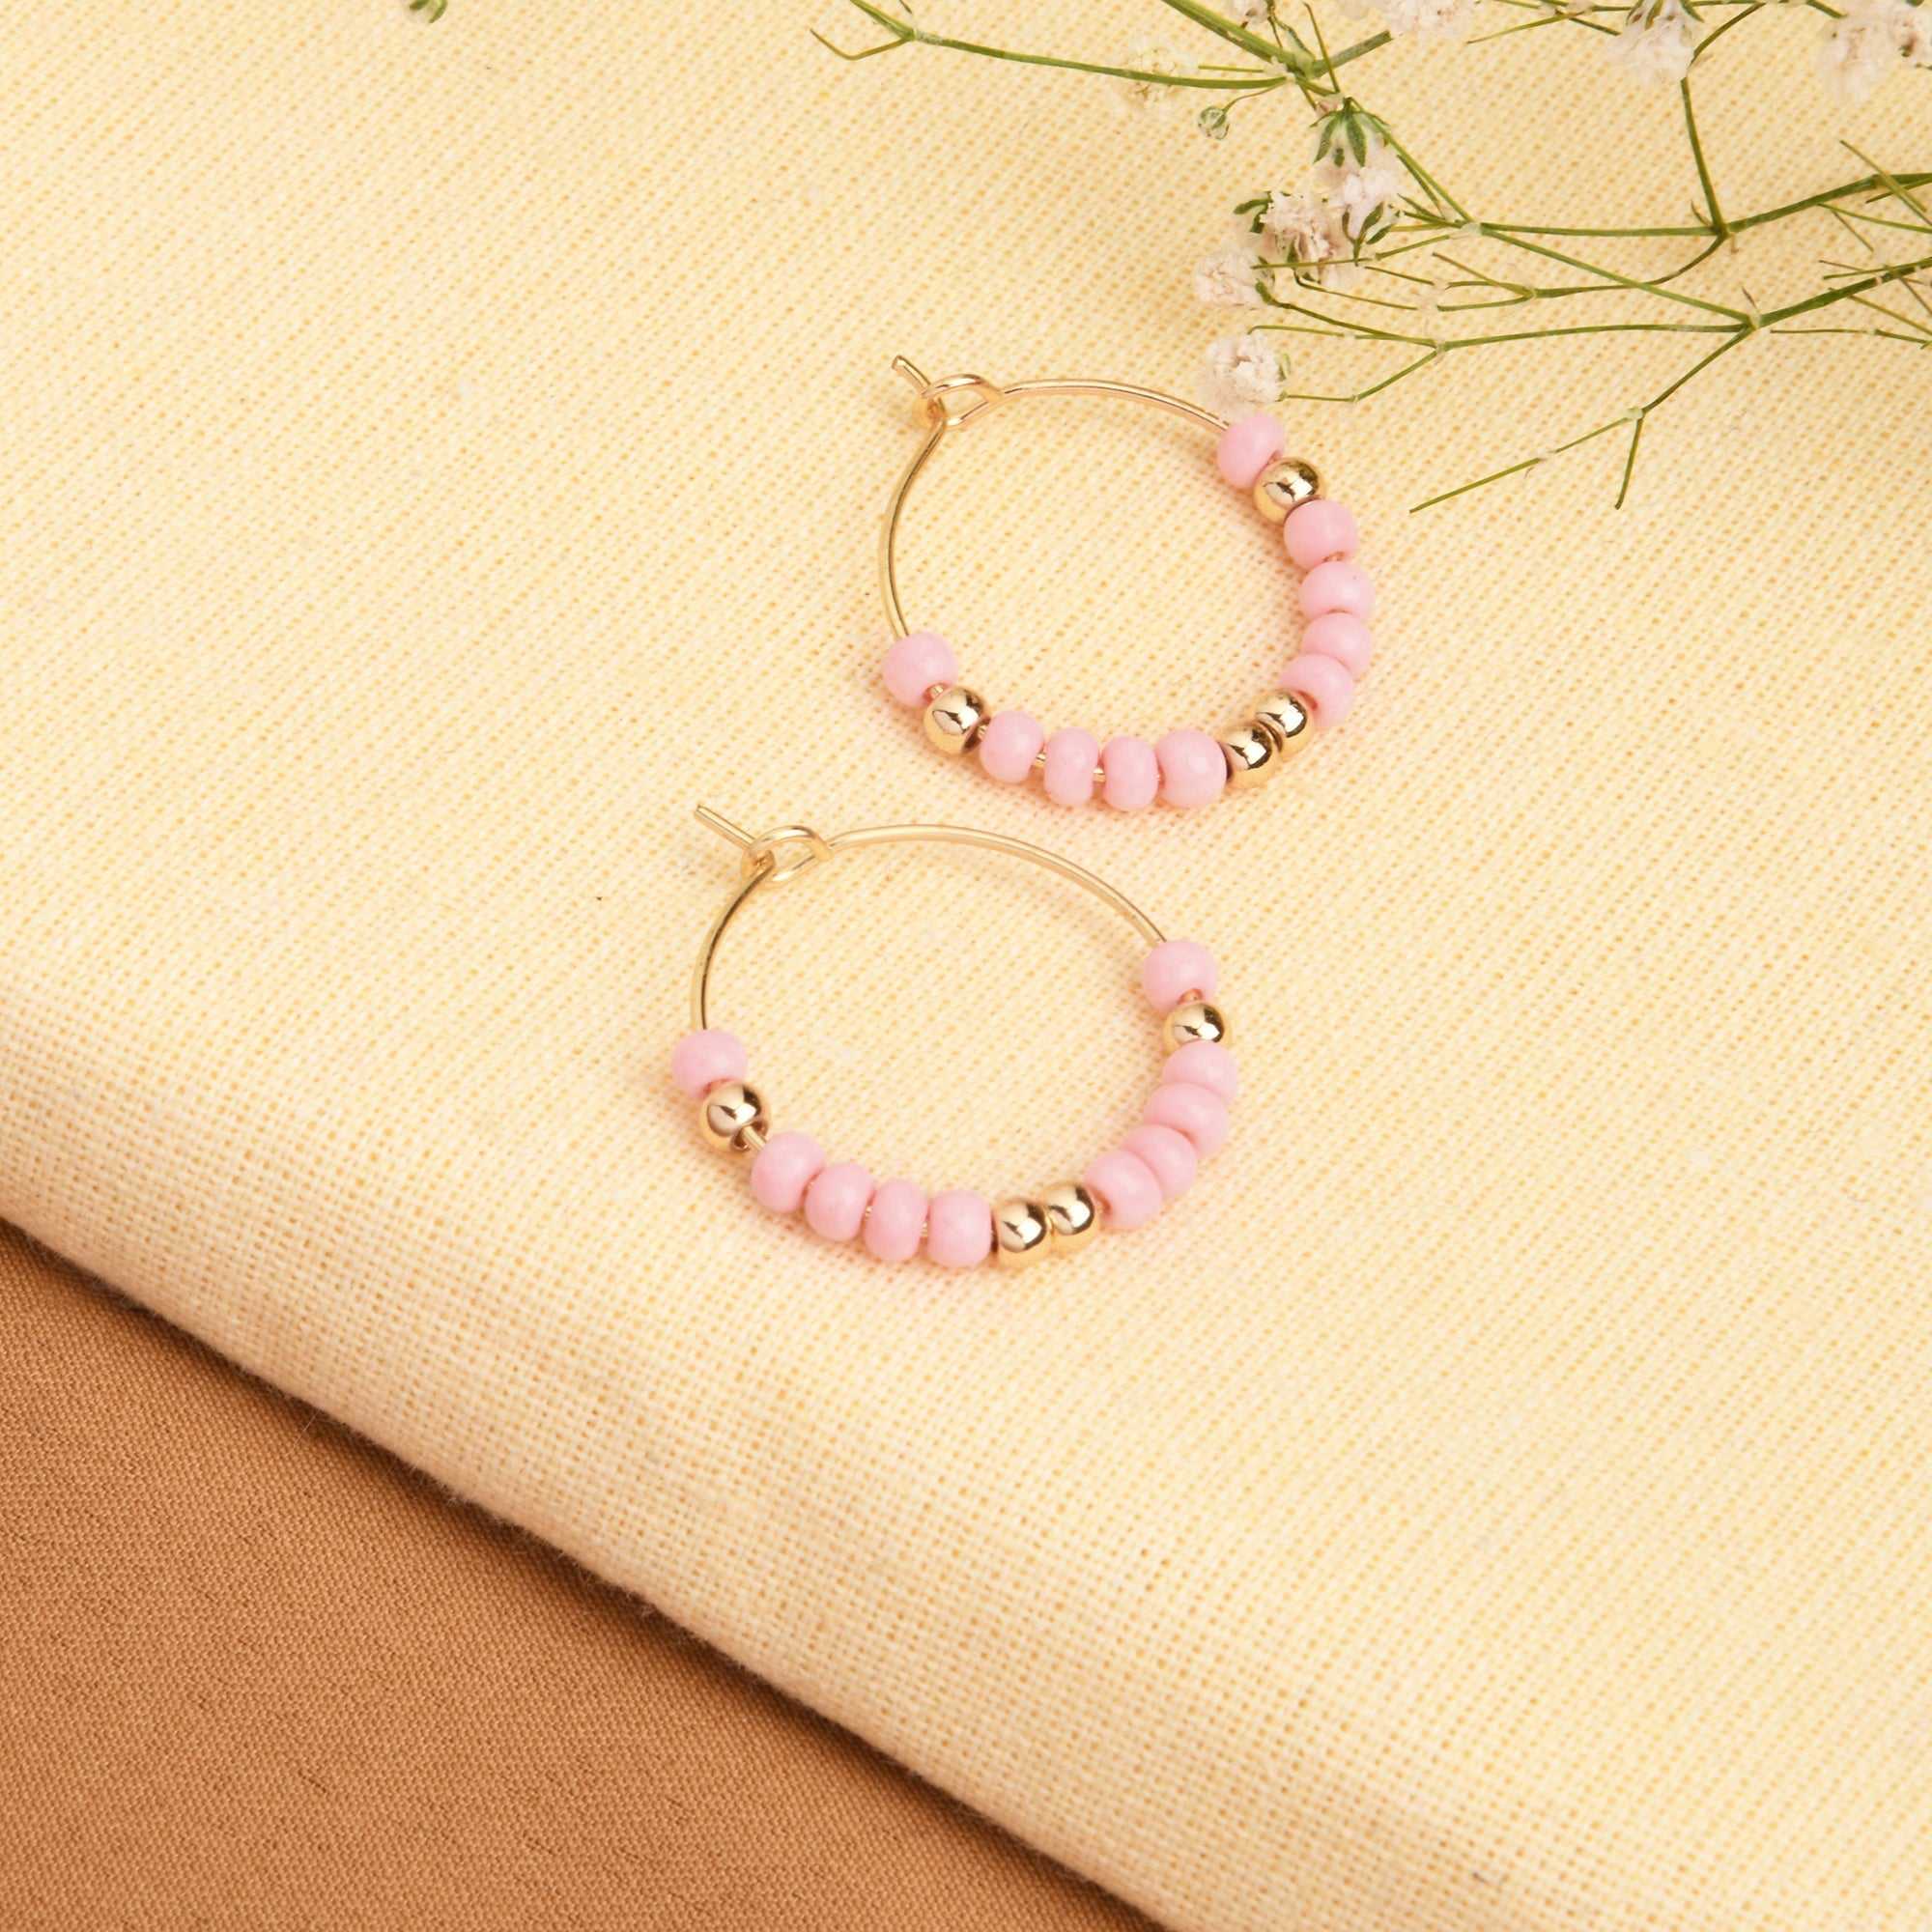 Accessorize London Women's Pink Mini Beaded Hoop Earring